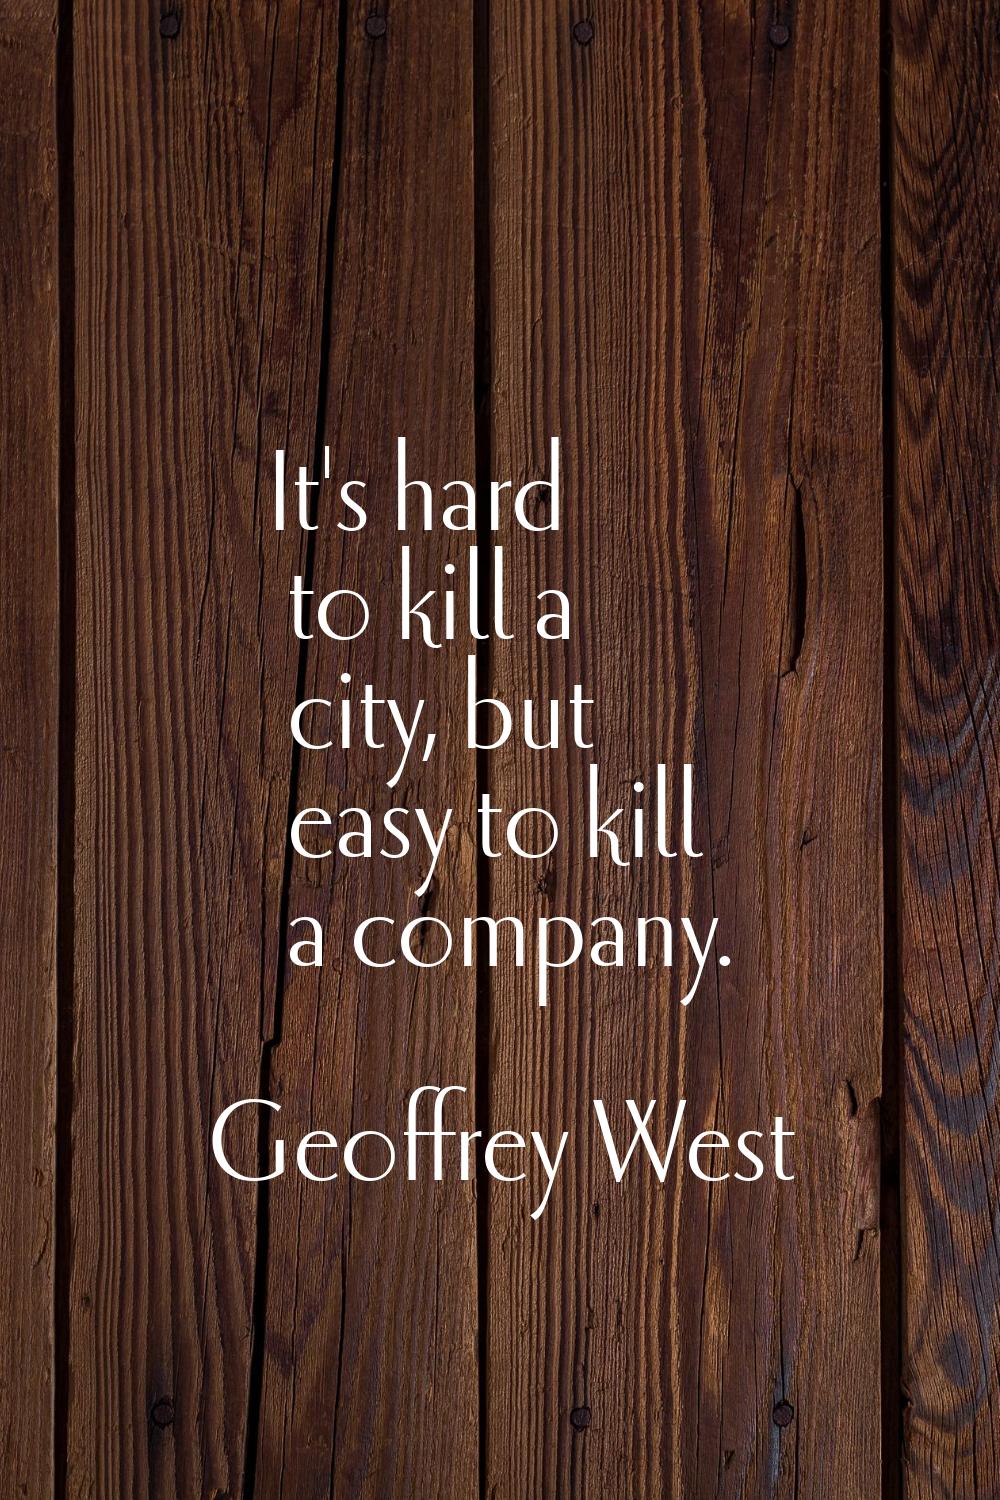 It's hard to kill a city, but easy to kill a company.